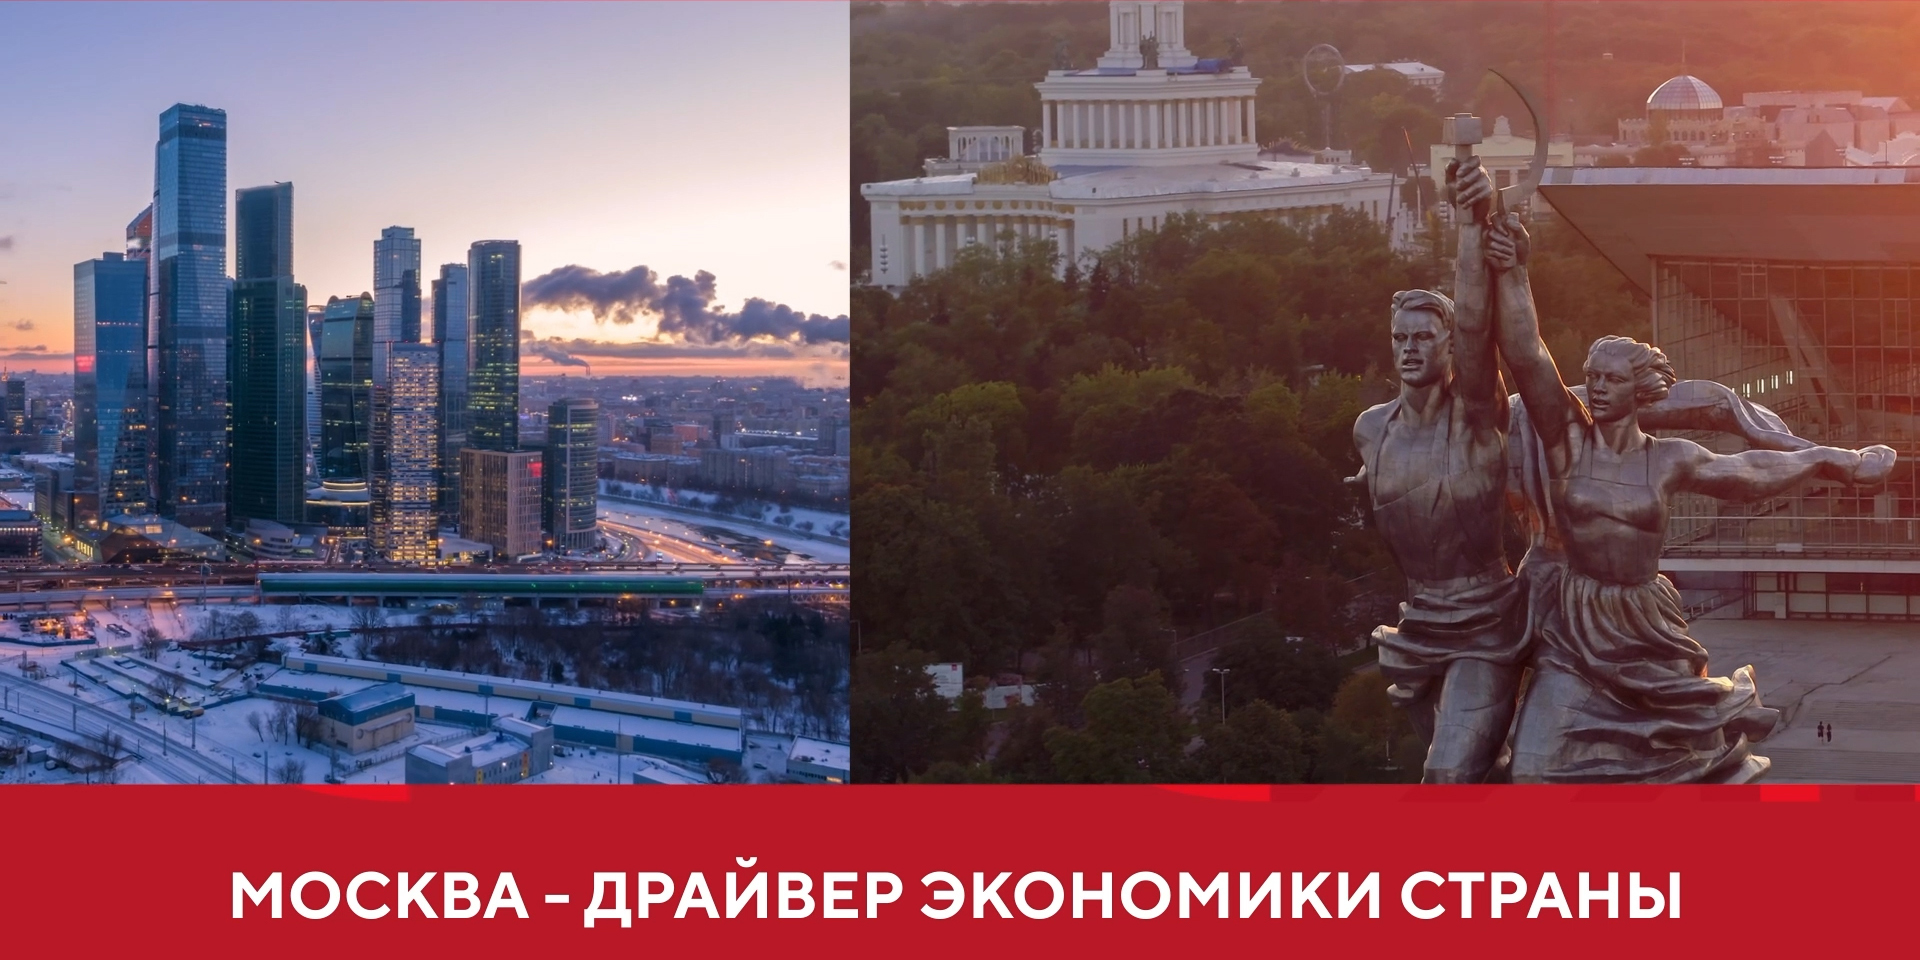  Экономика Москвы в цифрах